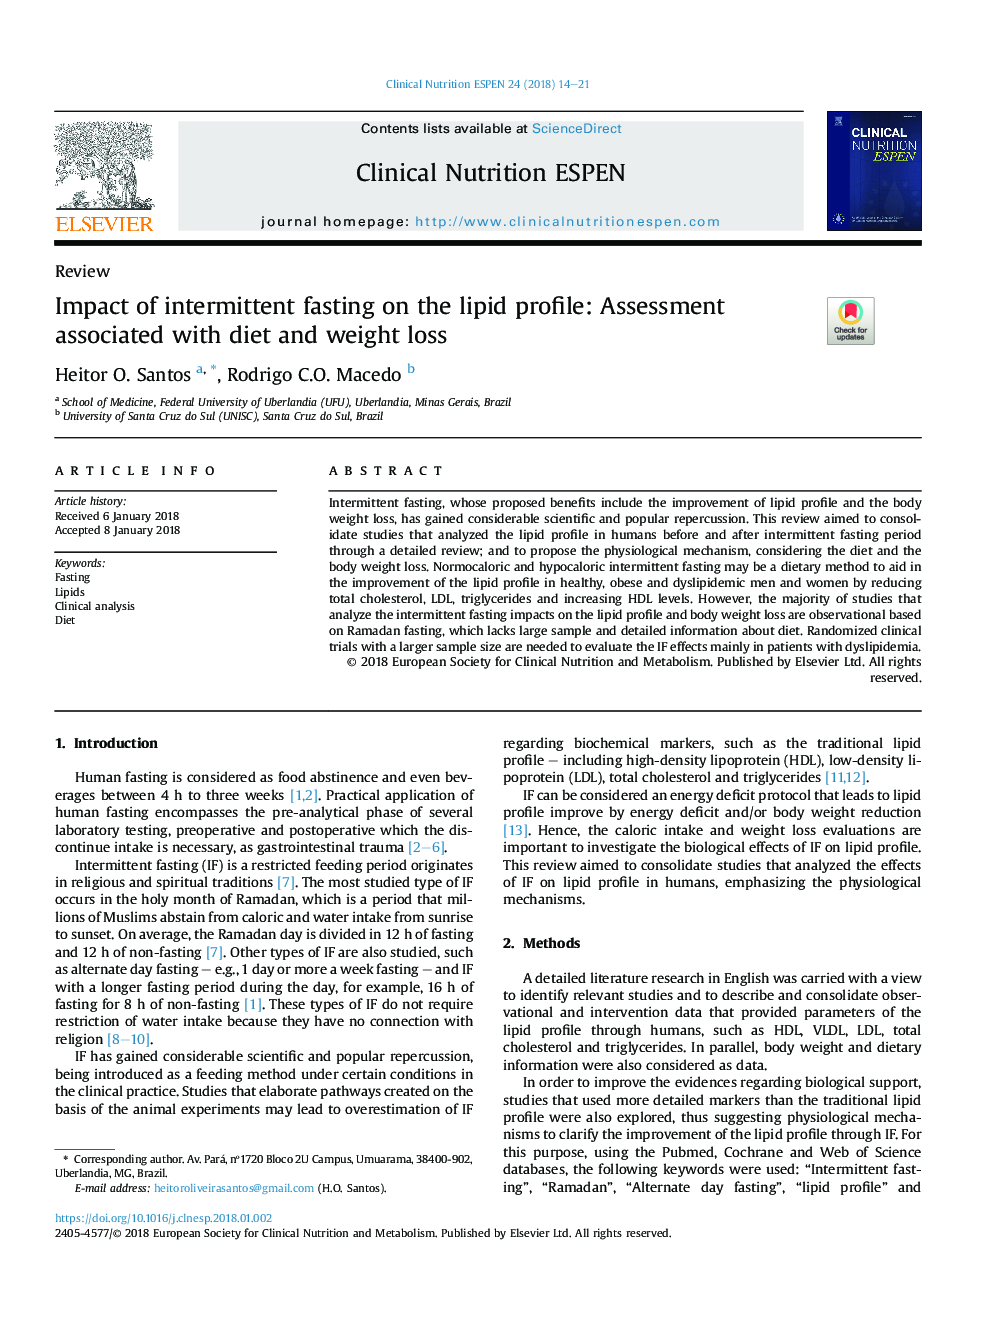 تأثیر ناگهانی متناوب بر روی پروفایل لیپید: ارزیابی مرتبط با رژیم غذایی و کاهش وزن 